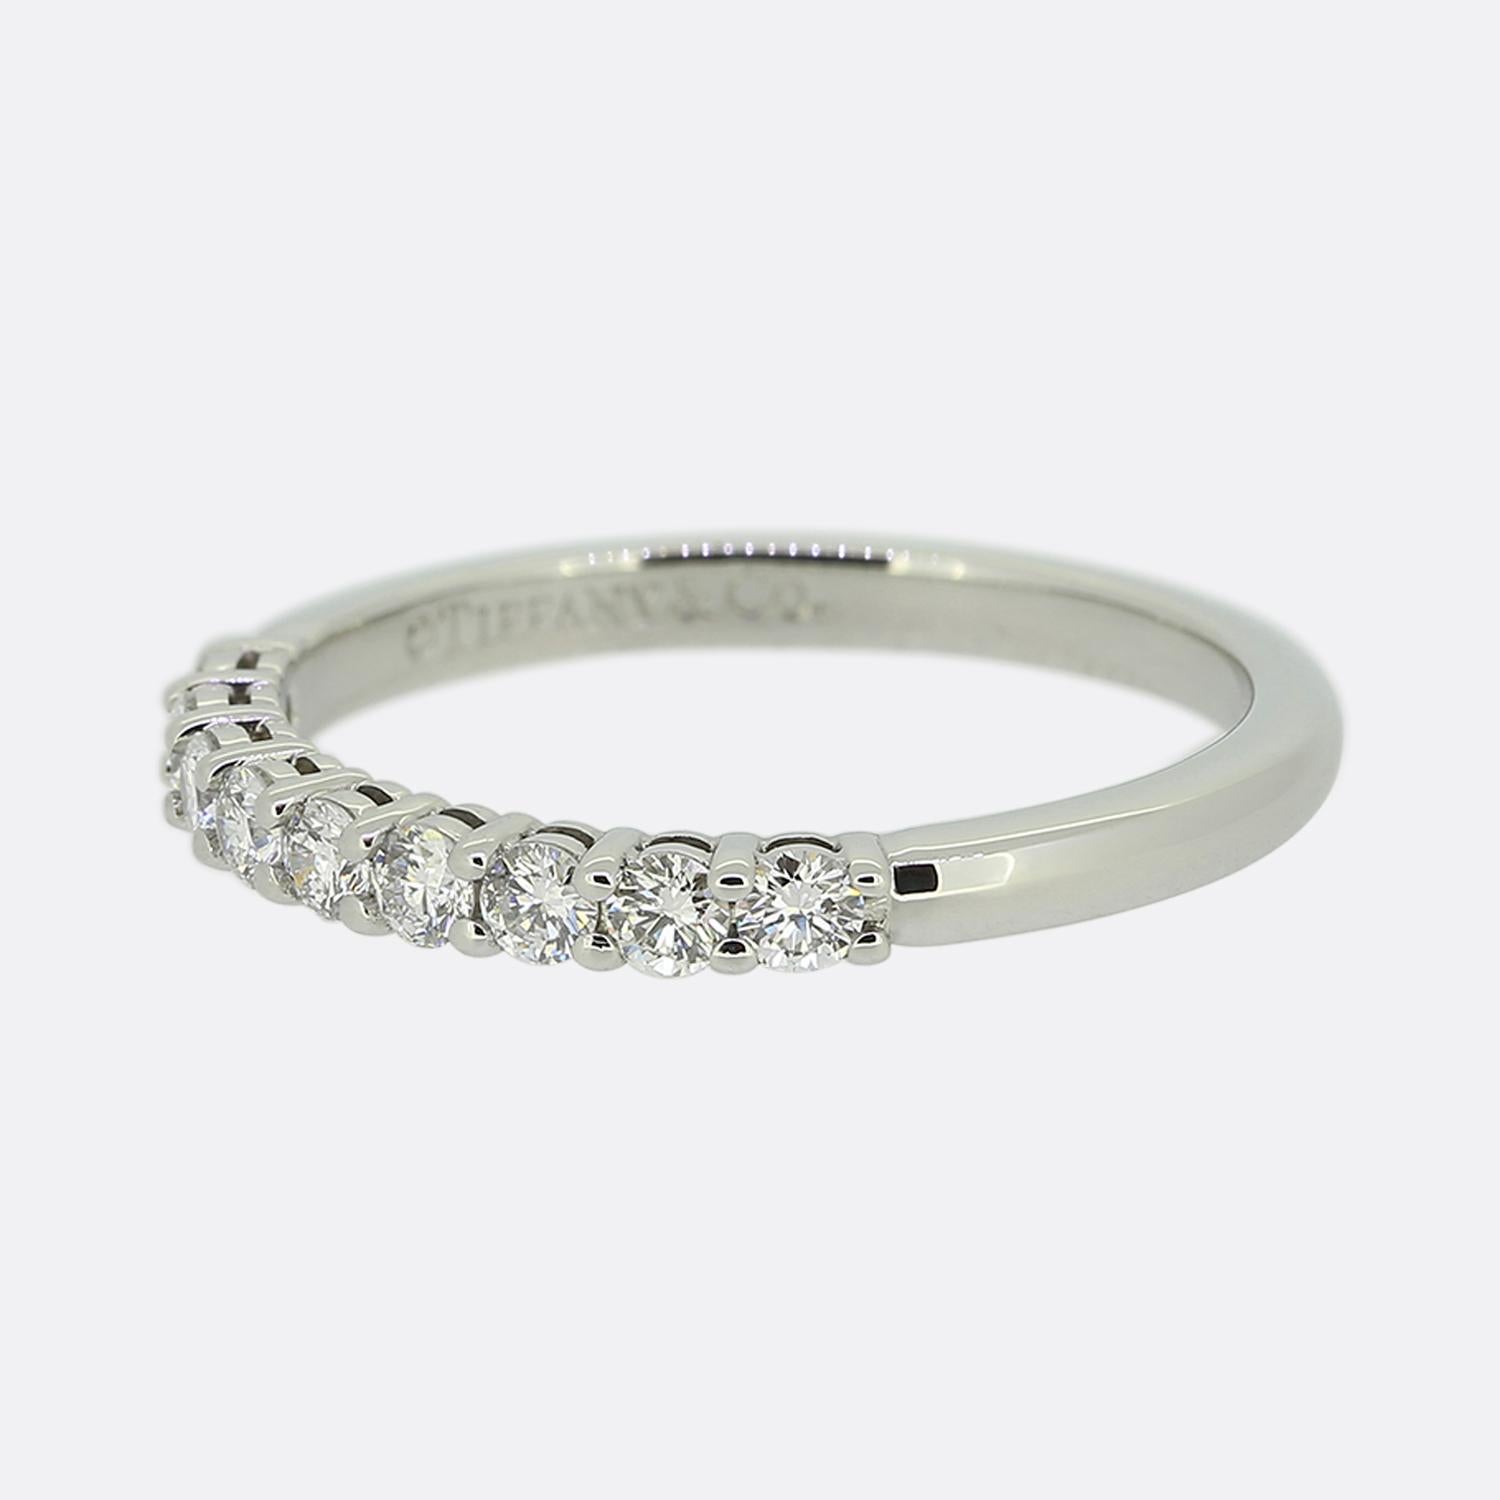 Hier haben wir einen wunderschönen Neunstein-Diamantring des weltbekannten Schmuckdesigners Tiffany & Co. Dieses aus Platin gefertigte Schmuckstück zeigt einen Halbkreis aus perfekt aufeinander abgestimmten runden Diamanten im Brillantschliff, die